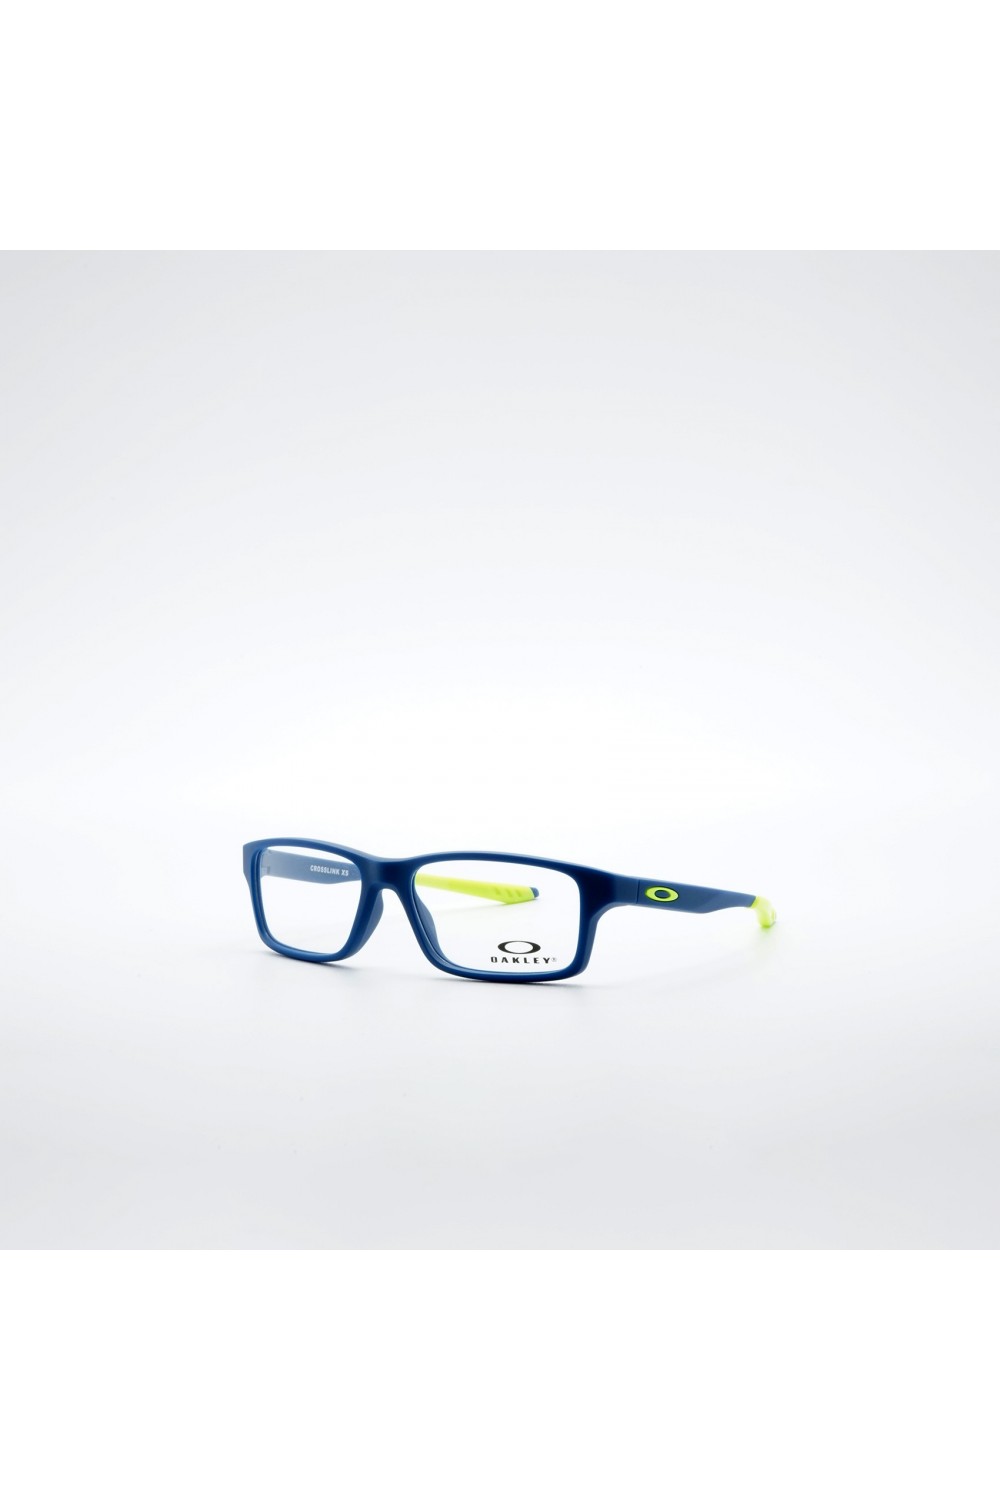 Oakley - Occhiali da vista in resina rettangolari per bambino blu/fluo - OY8002